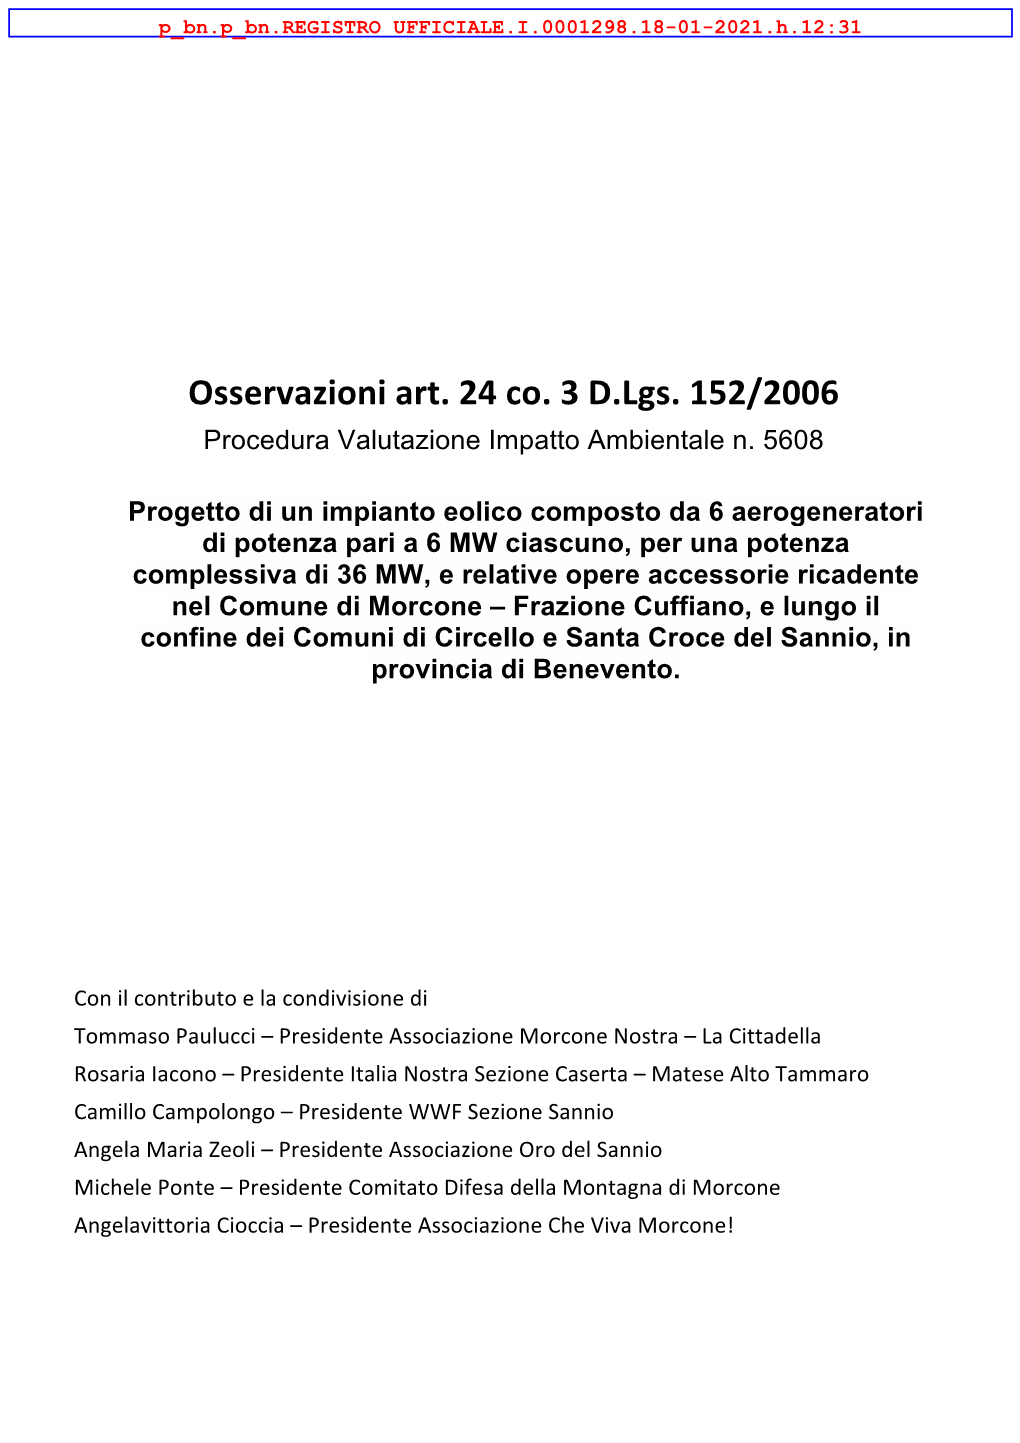 Osservazioni Art. 24 Co. 3 D.Lgs. 152/2006 Procedura Valutazione Impatto Ambientale N